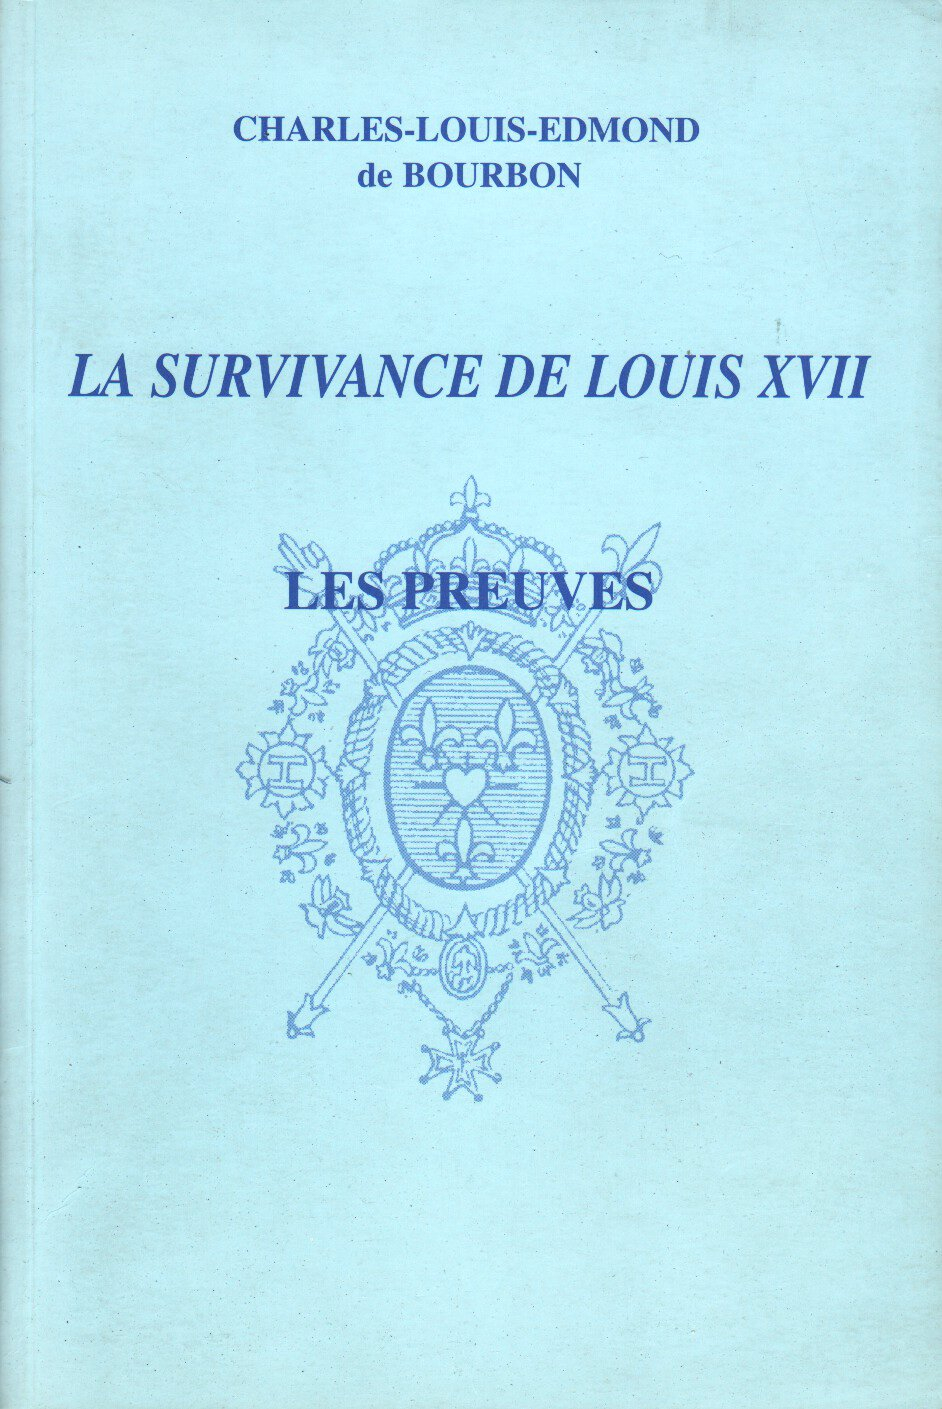 La survivance de Louis XVII : Les preuves